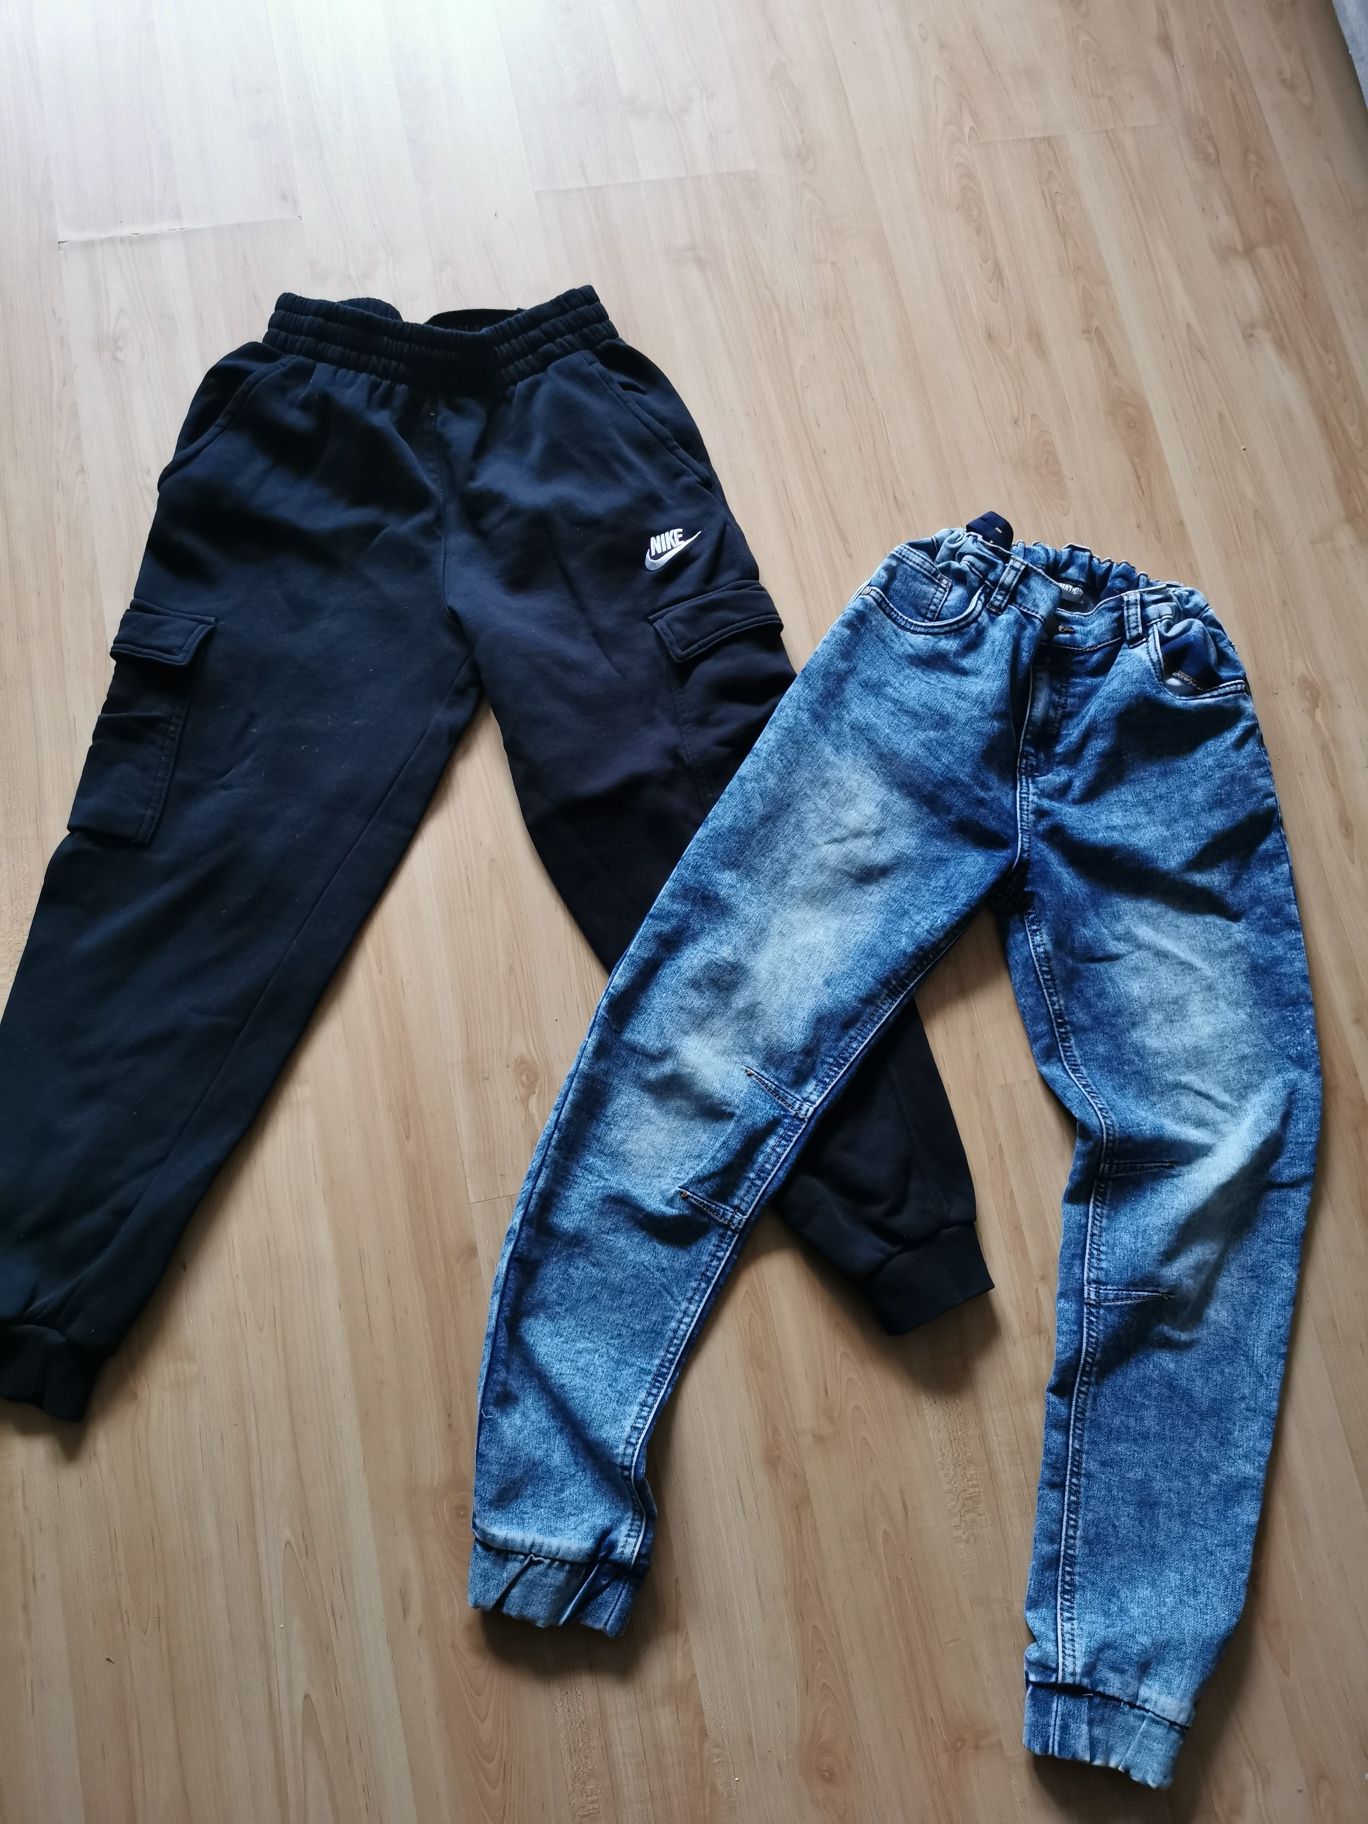 Zestaw /Paka dla chłopaka r. 158 spodnie